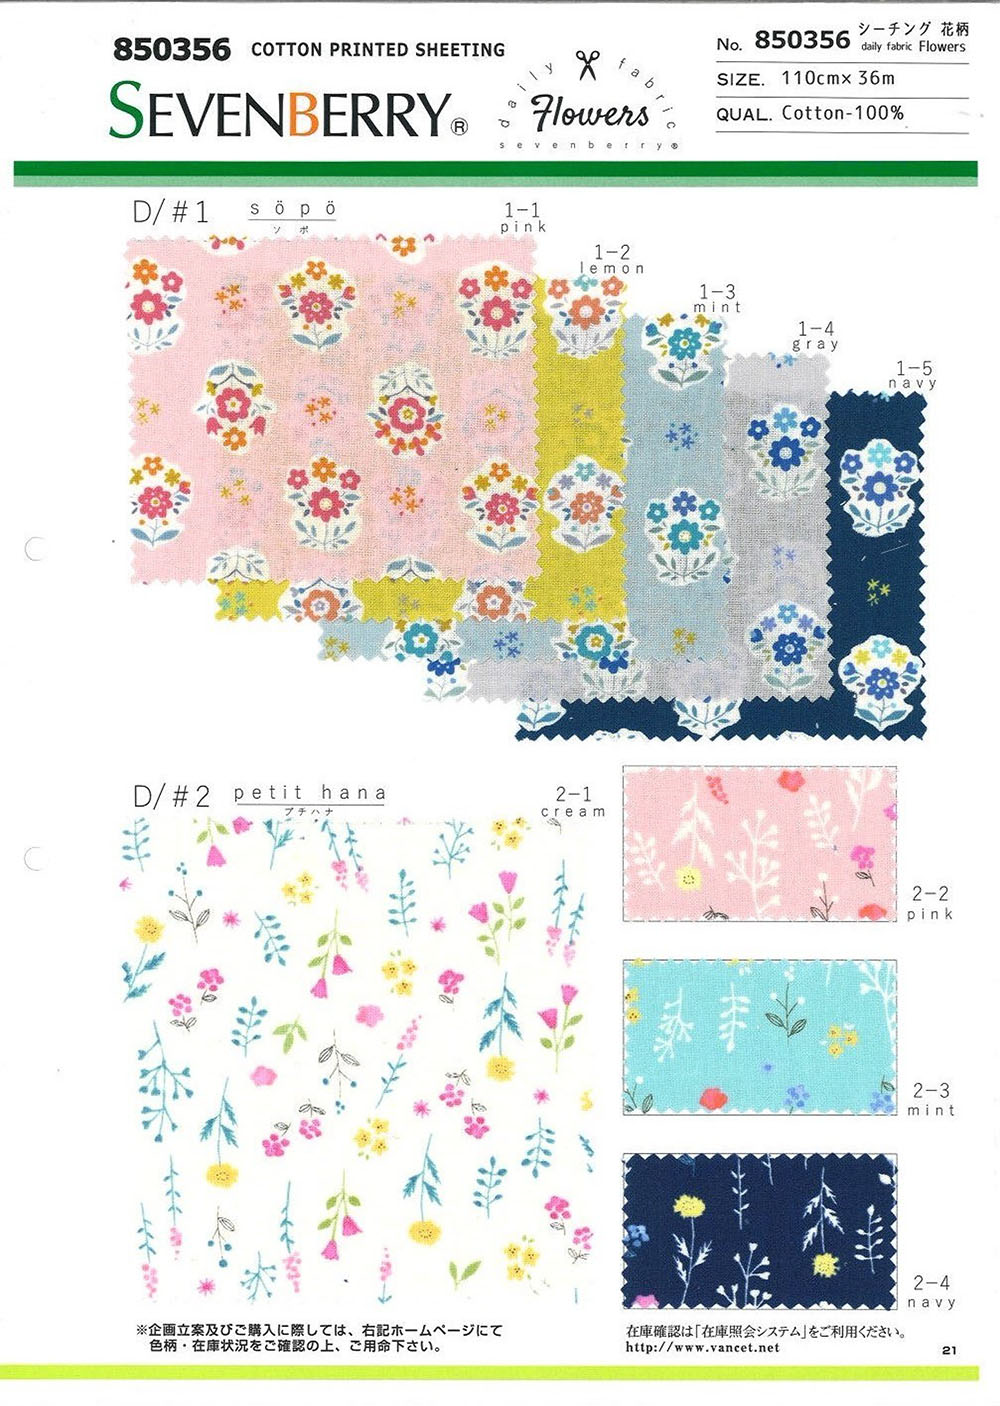 850356 シーチング Daily Fabric Flowers[生地] VANCET